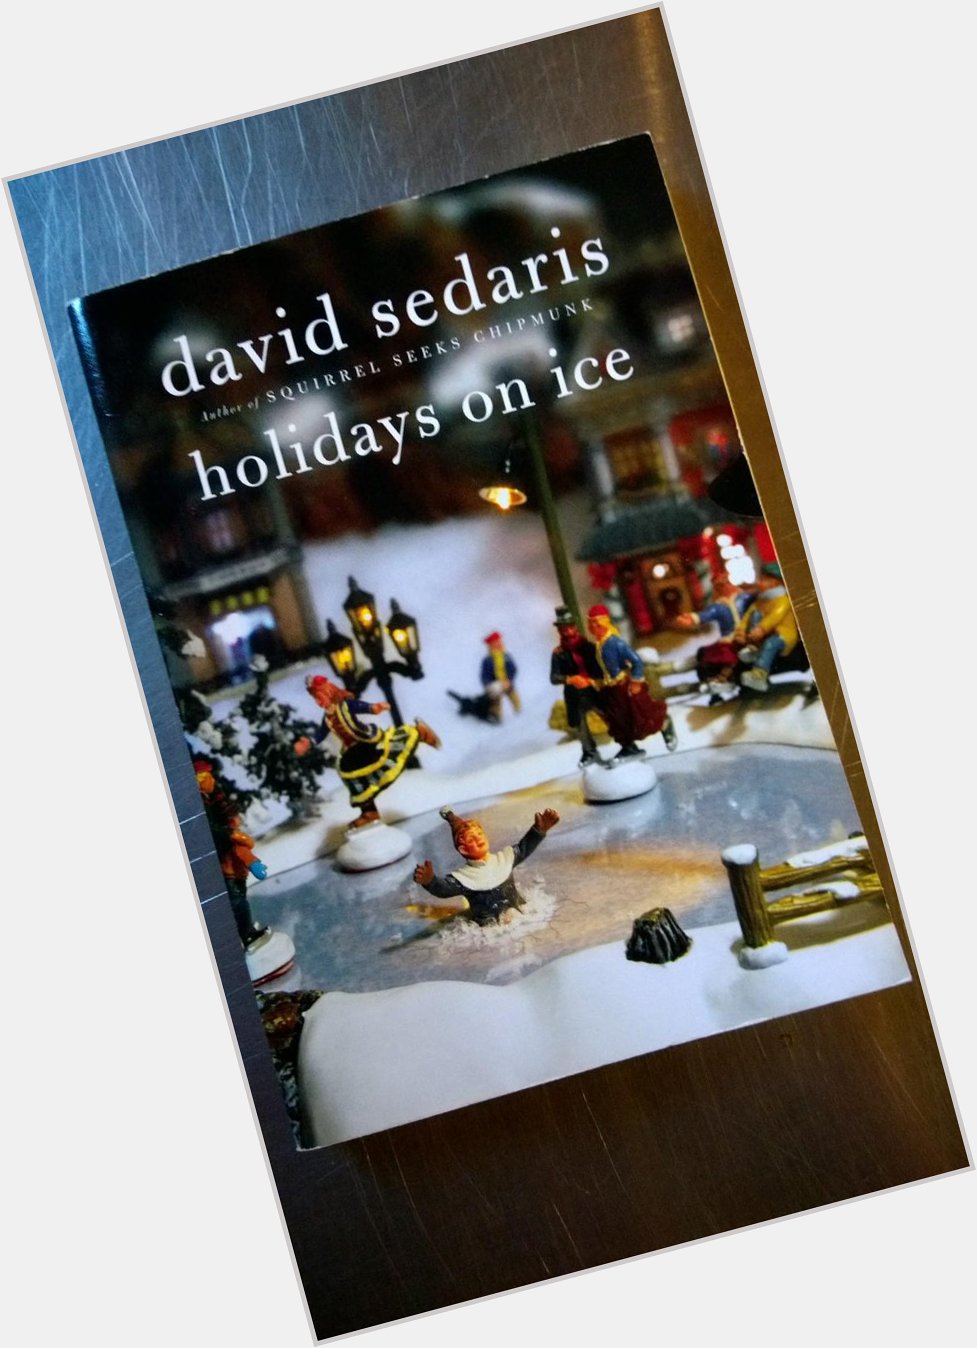 Happy Birthday to David Sedaris! 